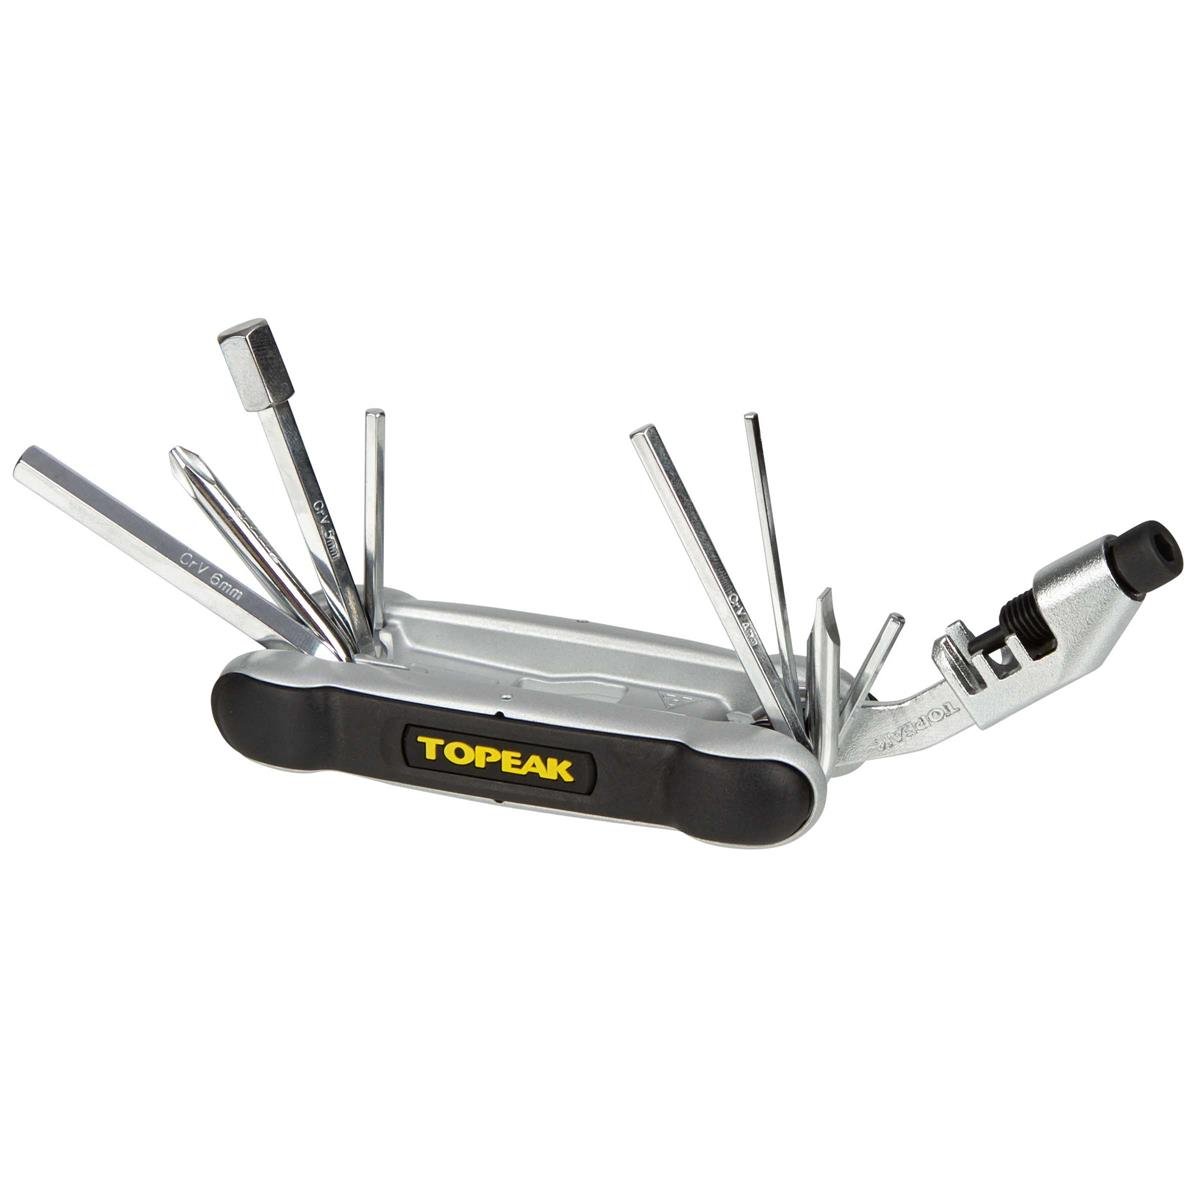 Topeak Multitool Hummer 2 18 Tools